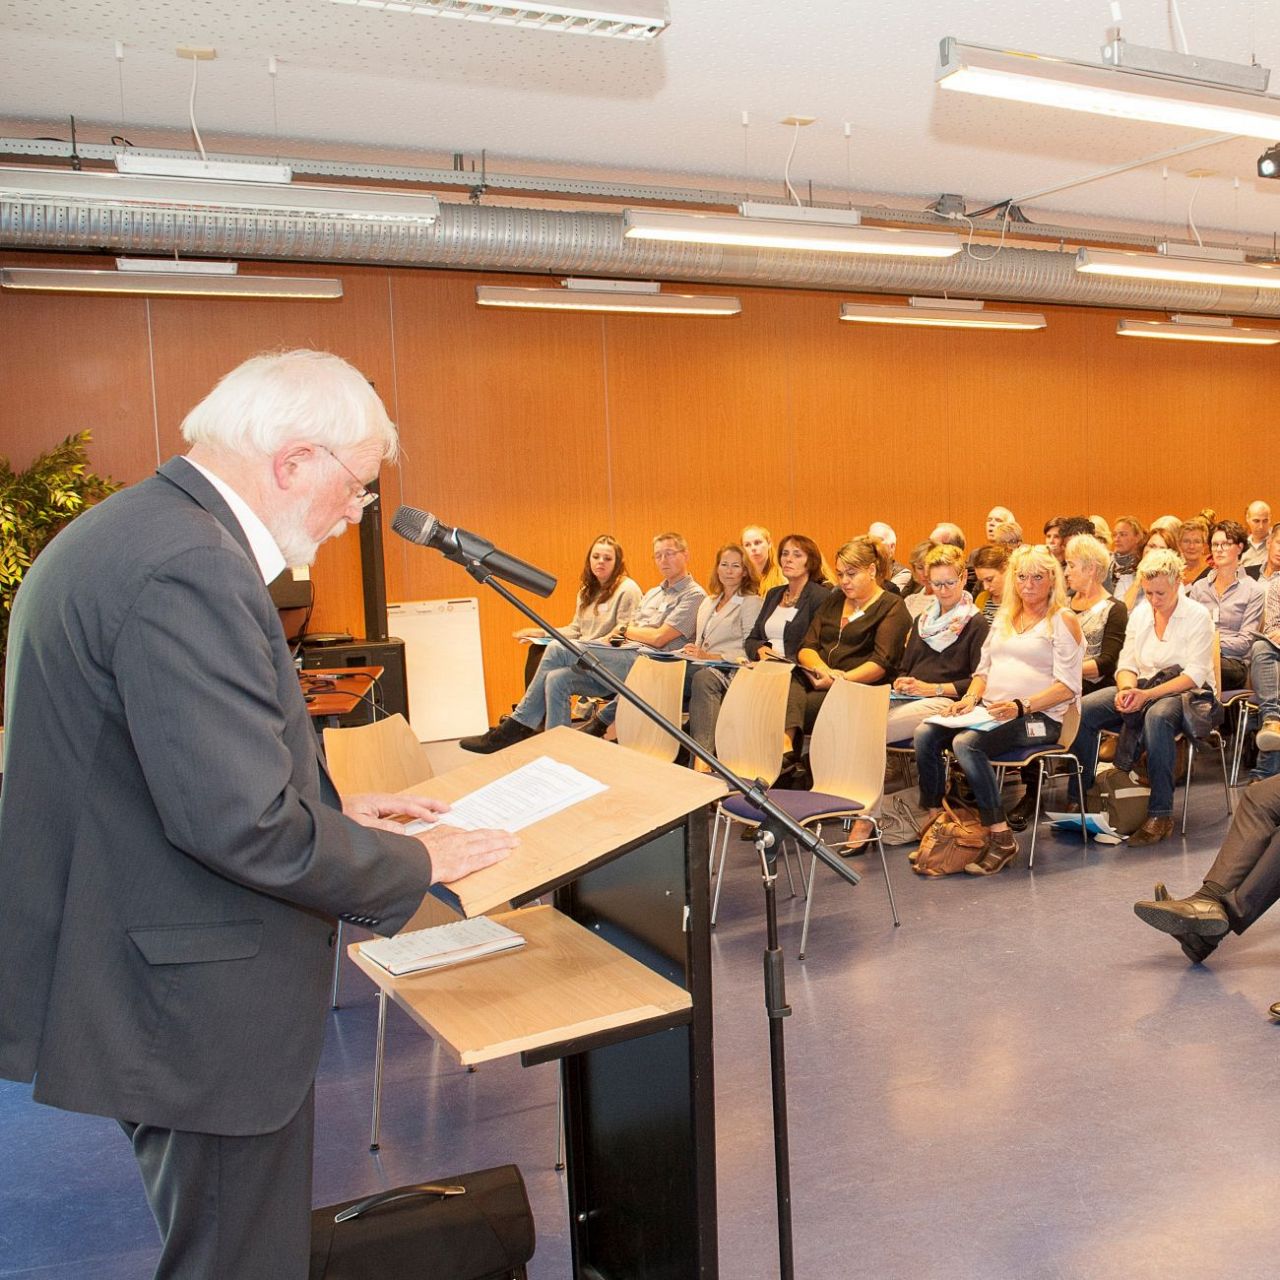 Onderwijsconferentie over gelijke kansen in Maassluis